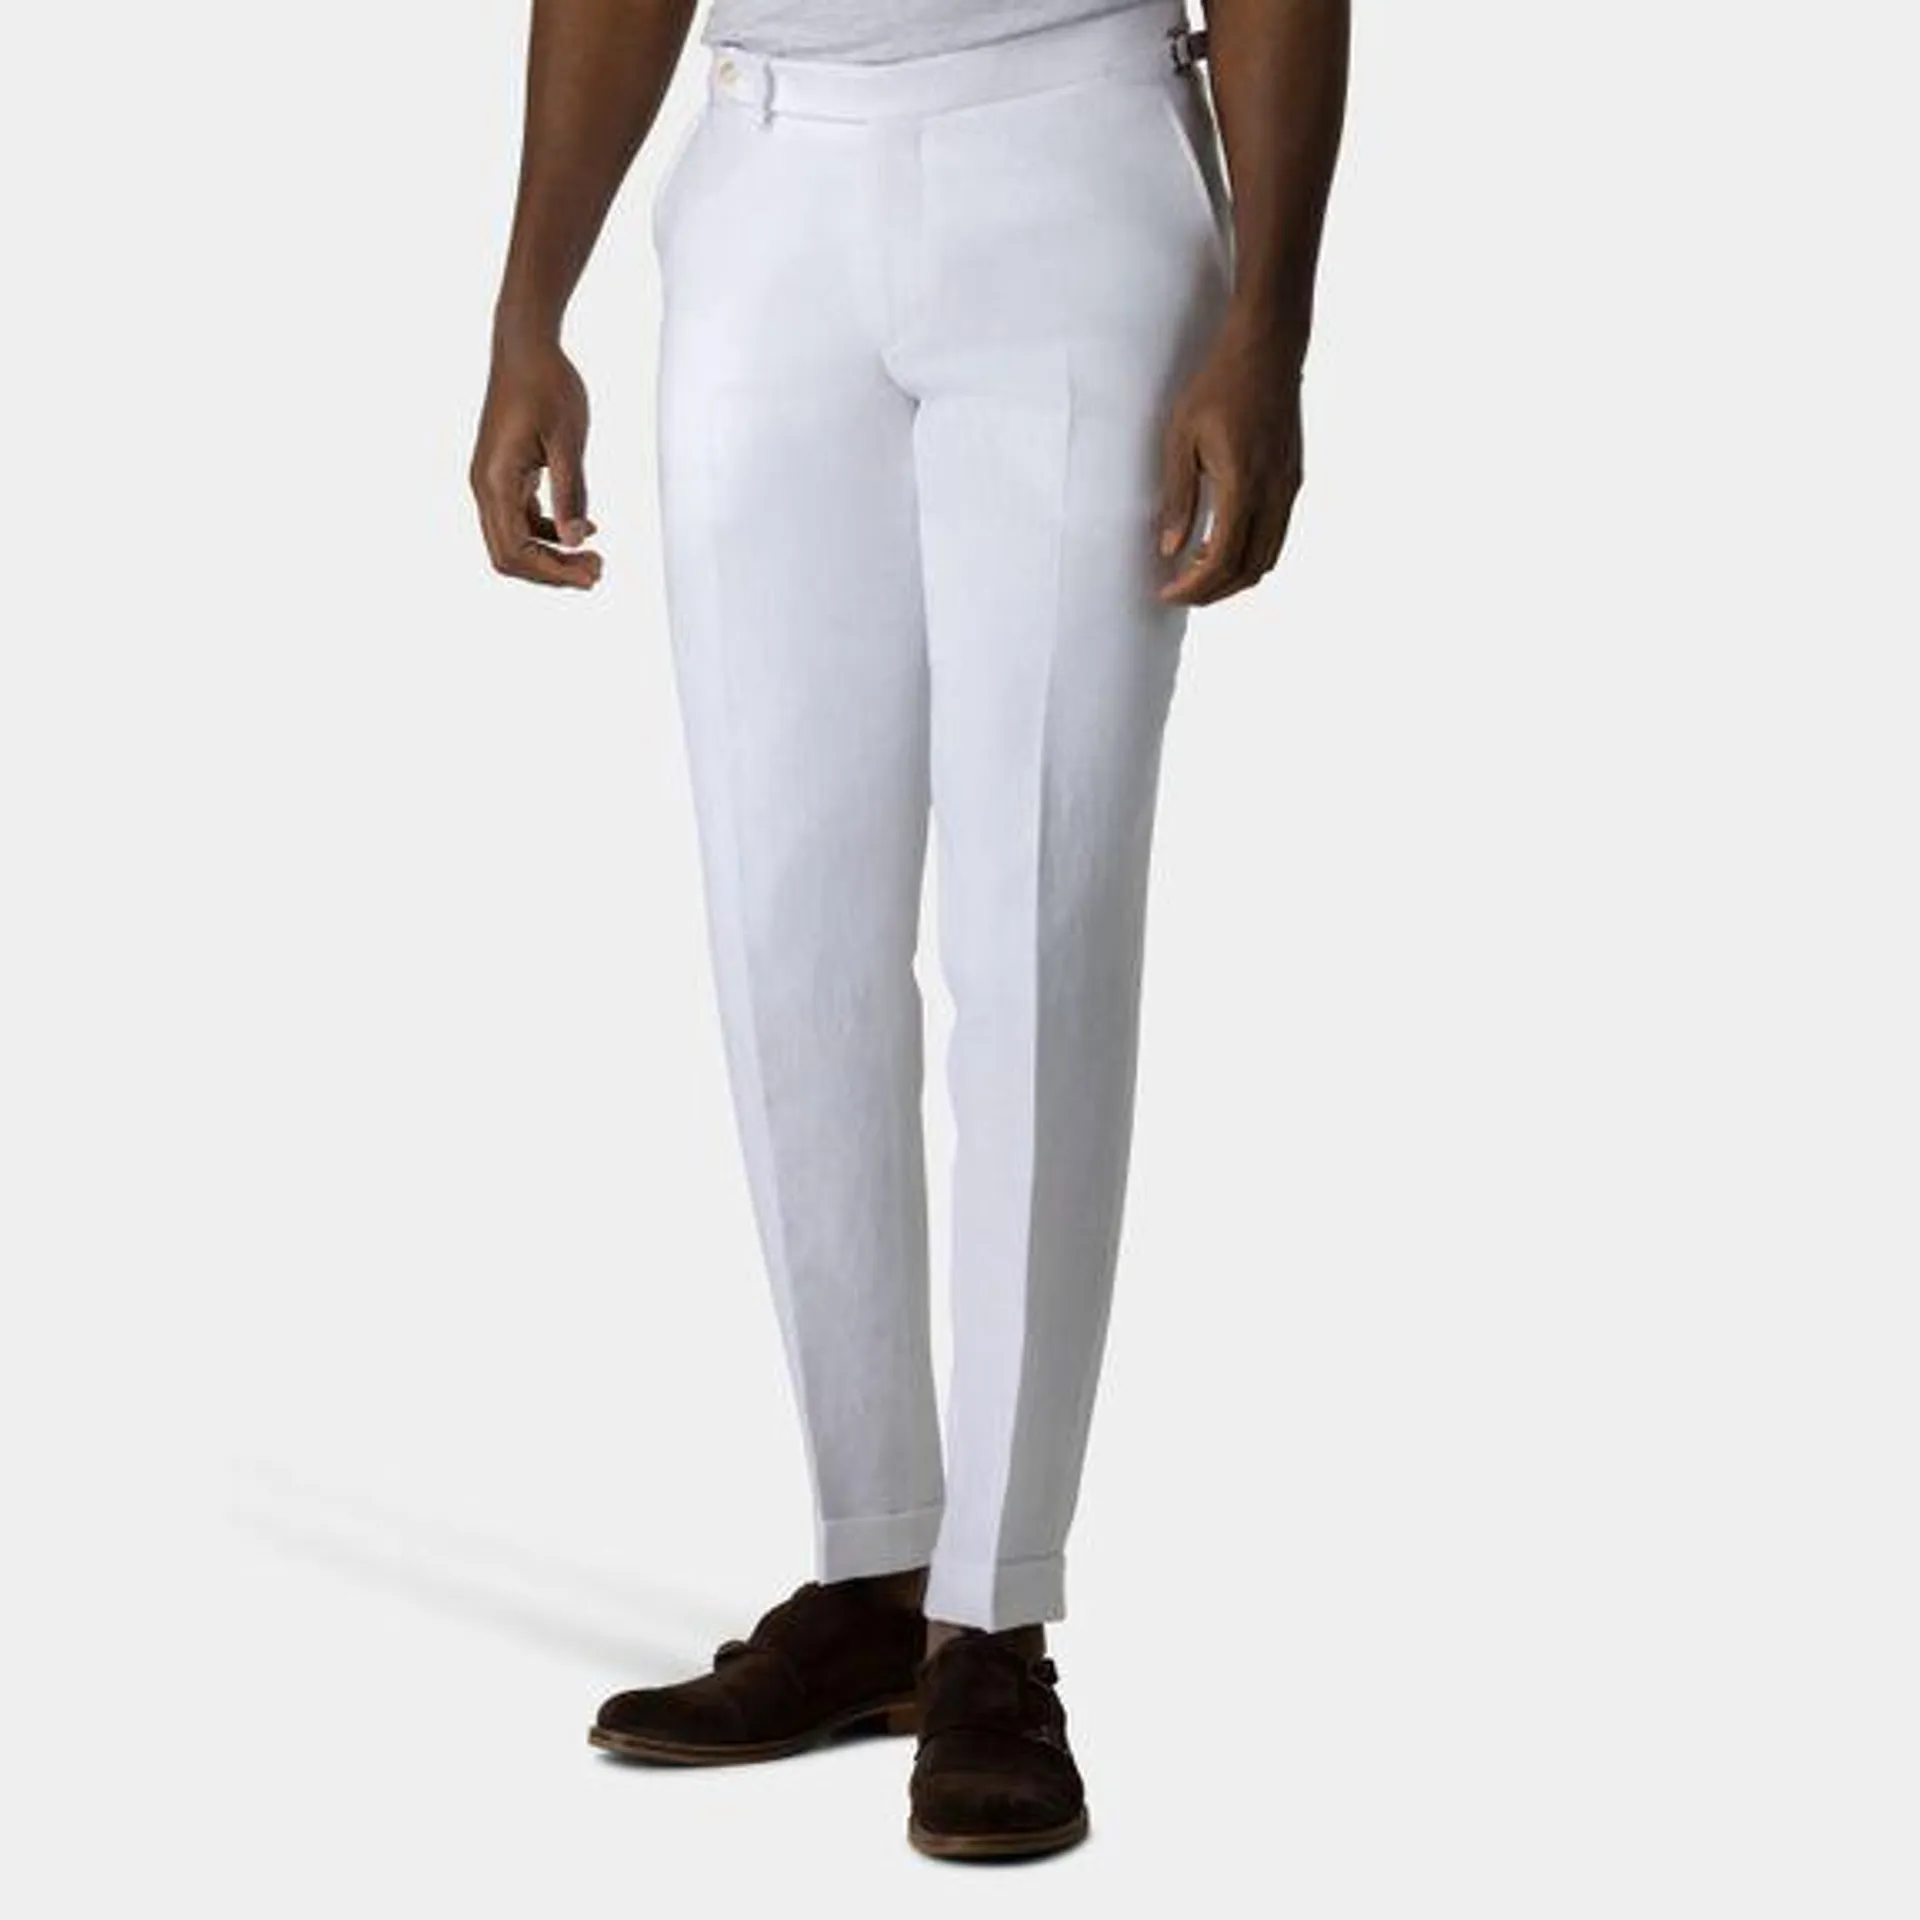 White suit pants